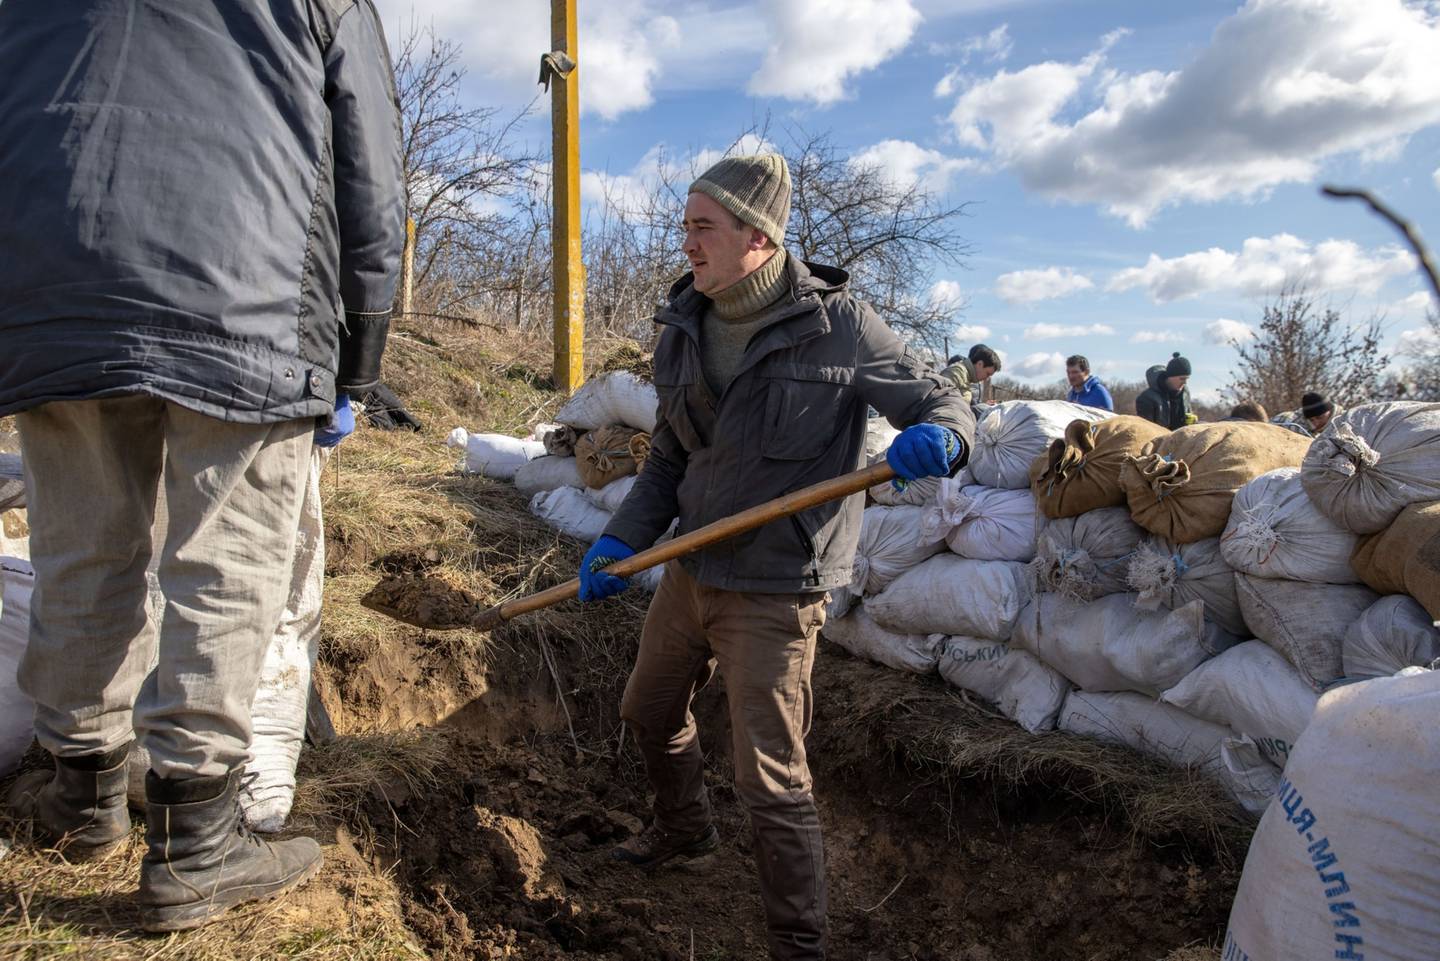 Aldeanos llenan sacos de tierra mientras preparan fortificaciones contra el ejército ruso en una carretera entre Kaharlyk y Zhytomyr, en el suroeste de Ucrania, el sábado 26 de febrero de 2022.